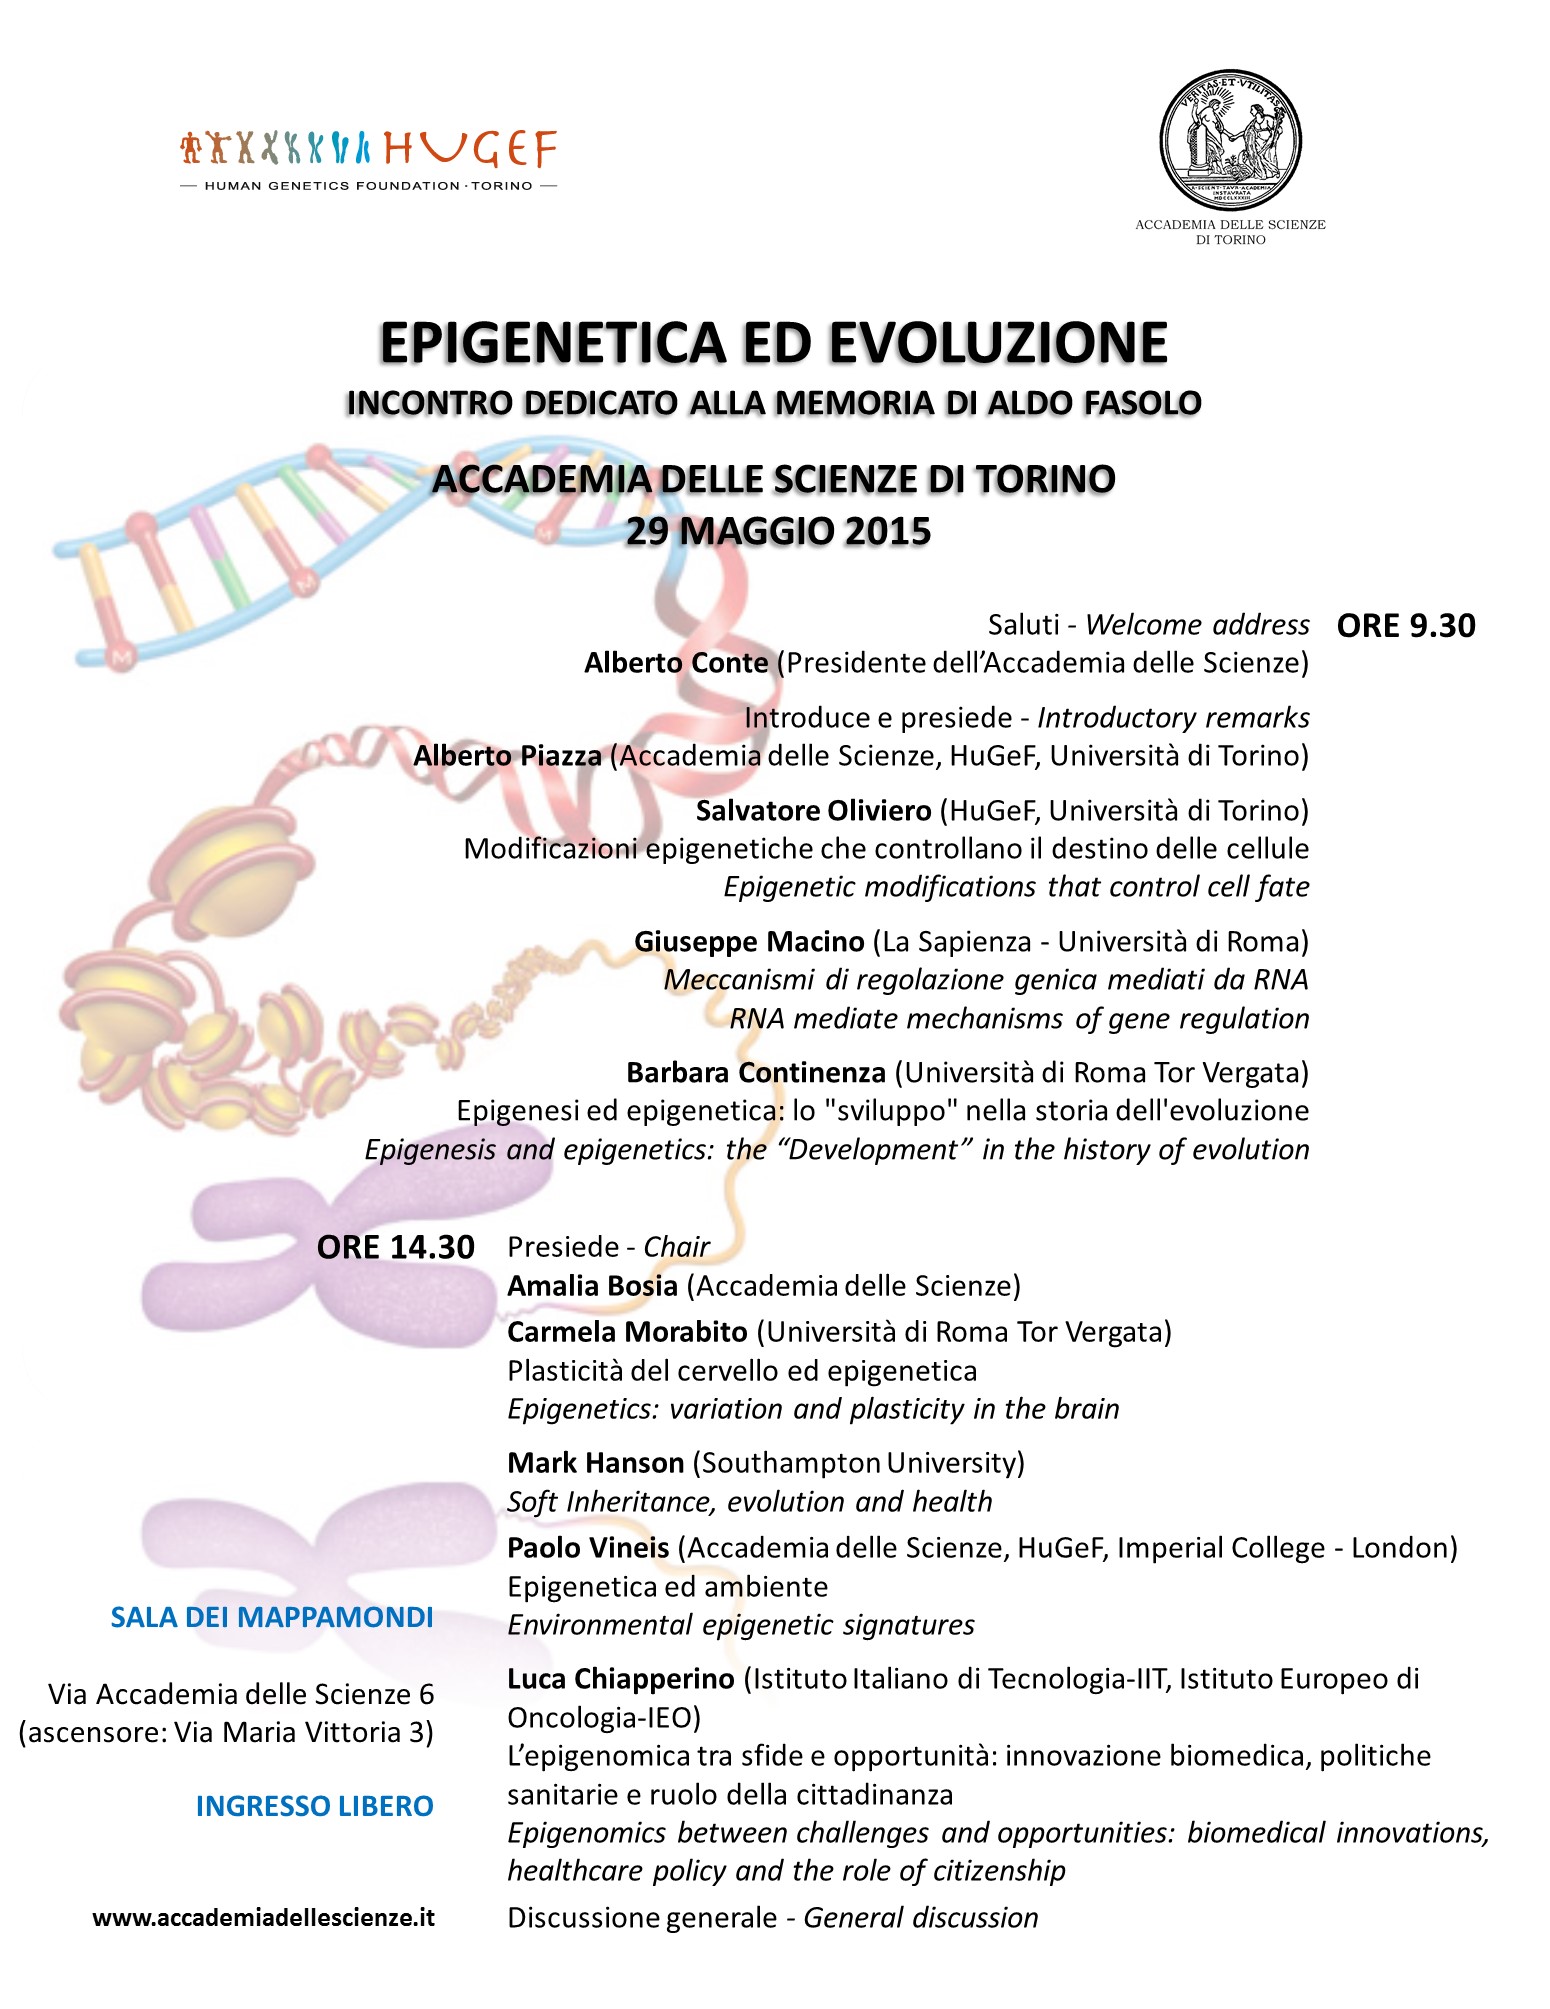 upload_Invito_Epigenetica_ed_Evoluzione.jpg